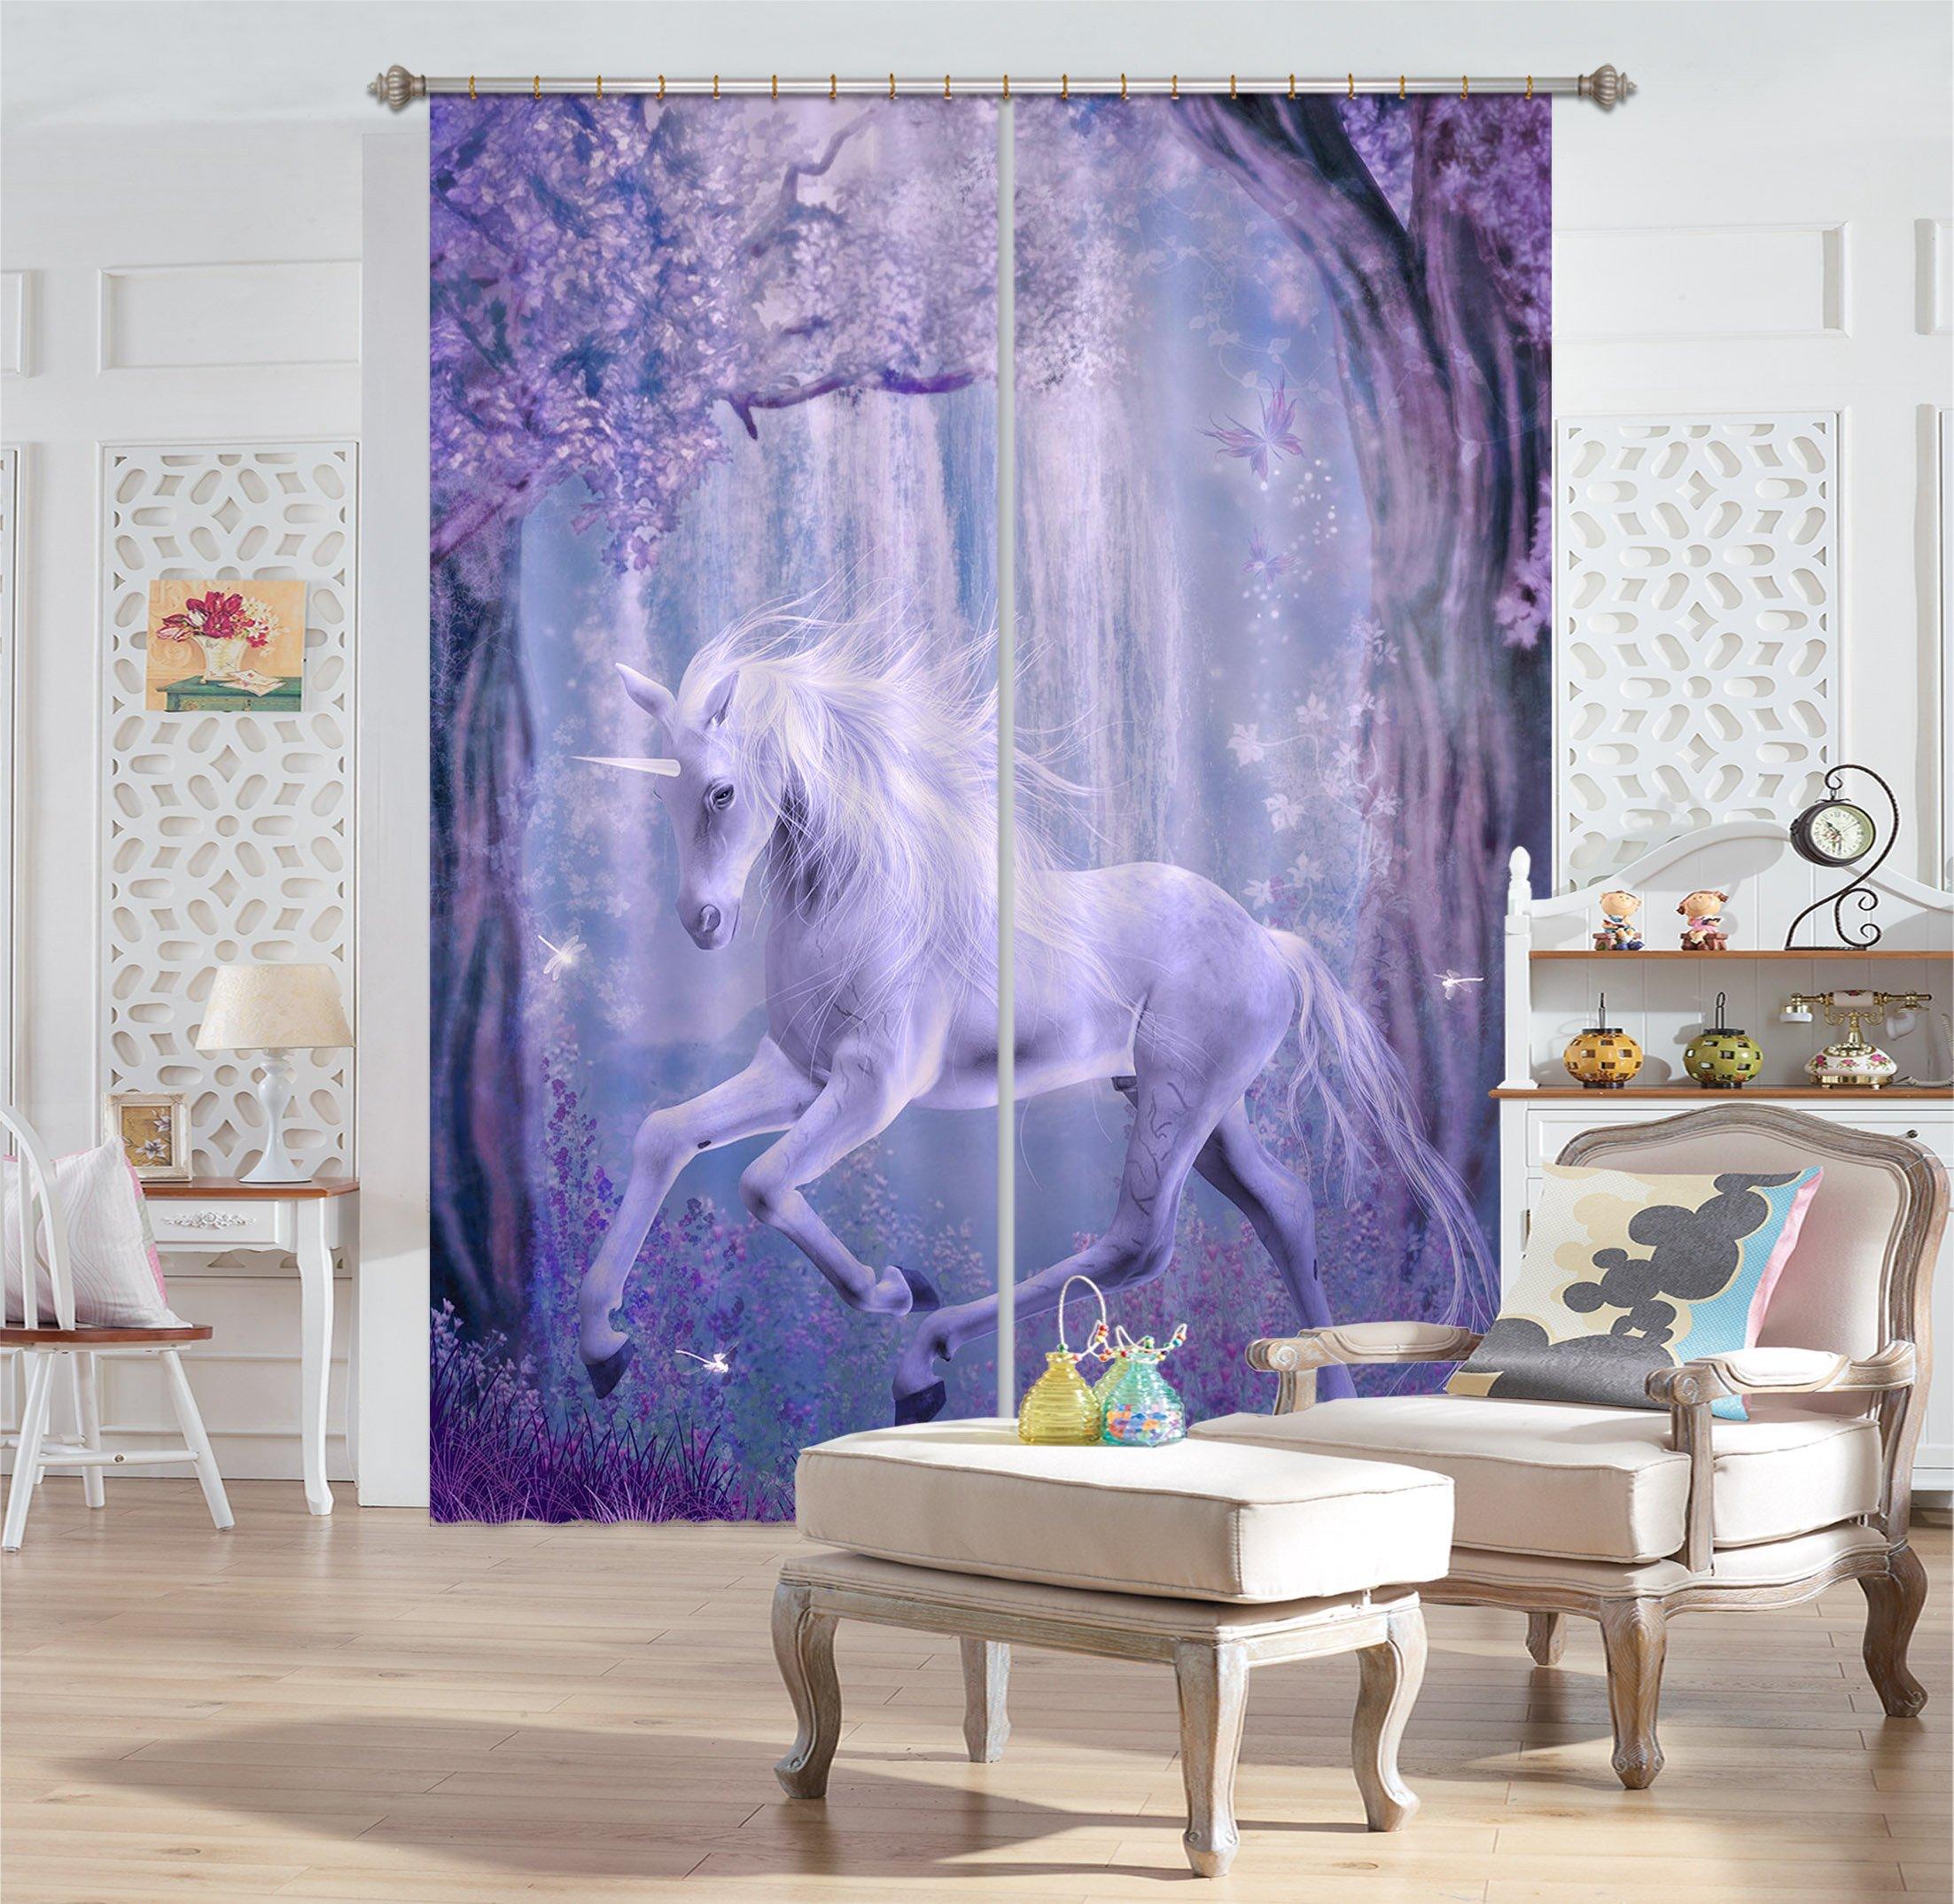 3D Dream Unicorn 082 Curtains Drapes Curtains AJ Creativity Home 